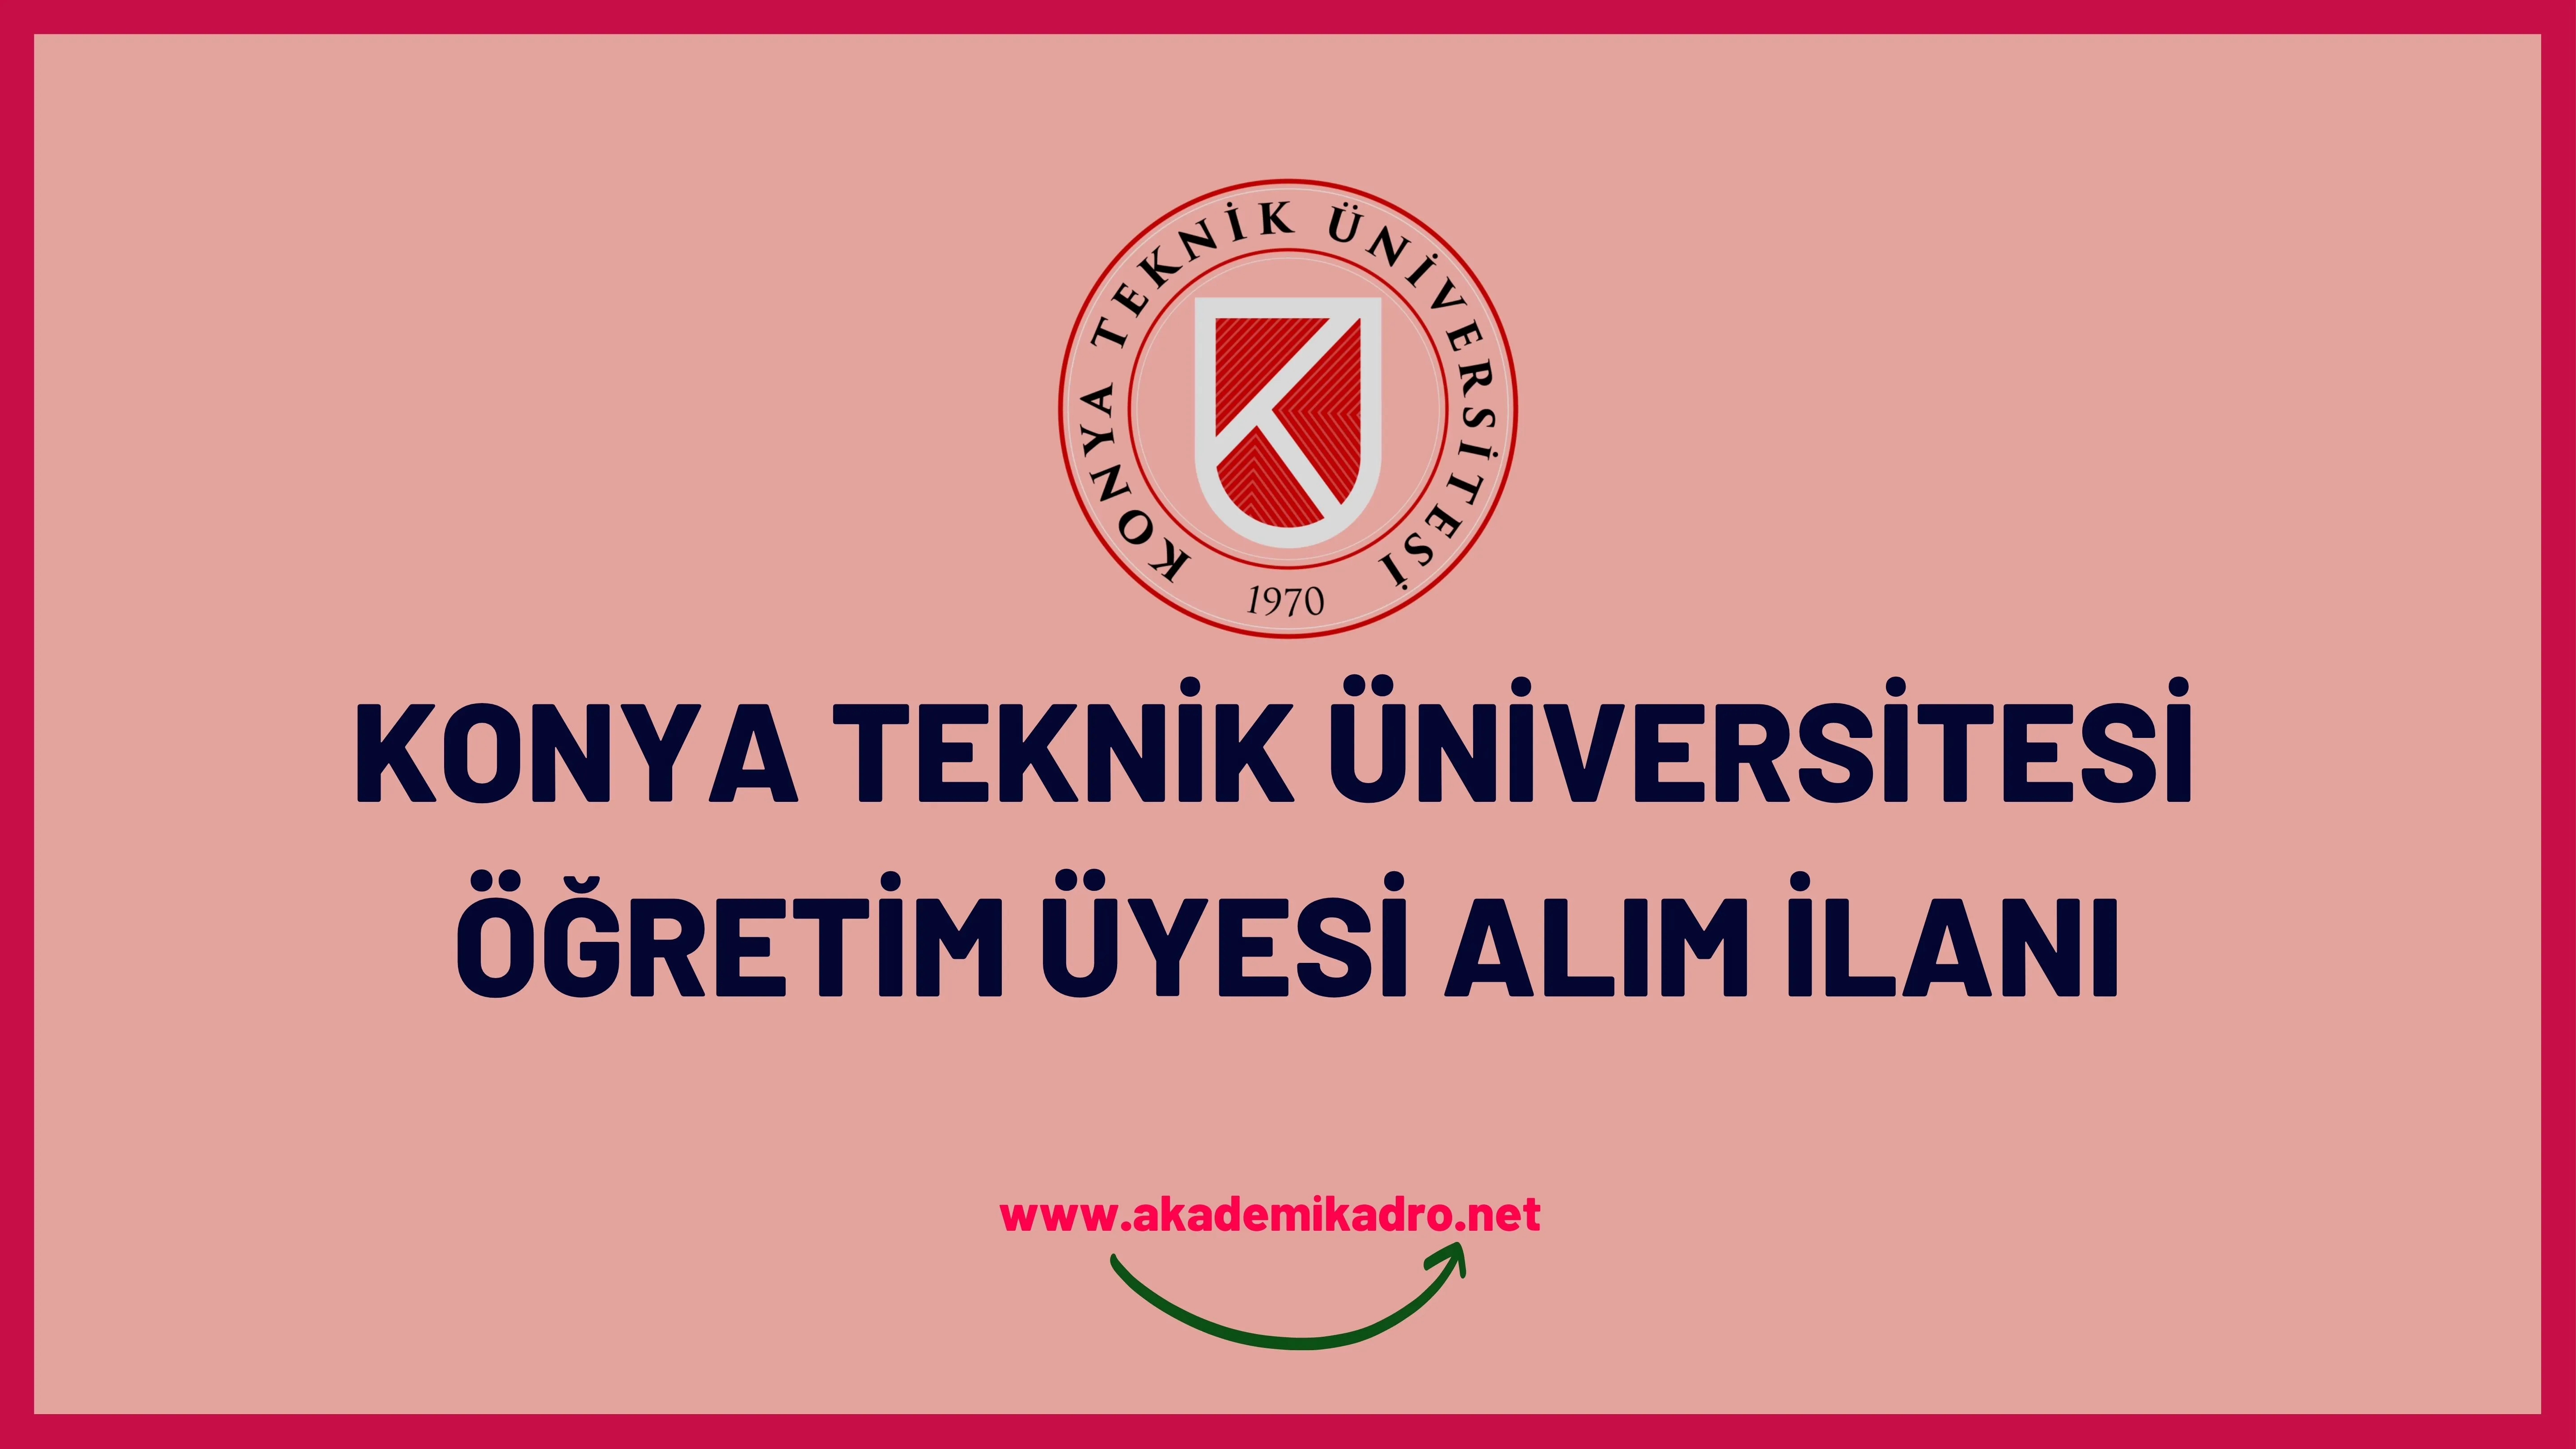 Konya Teknik Üniversitesi birçok alandan 23 Öğretim üyesi alacak. Son başvuru tarihi 23 Haziran 2023.